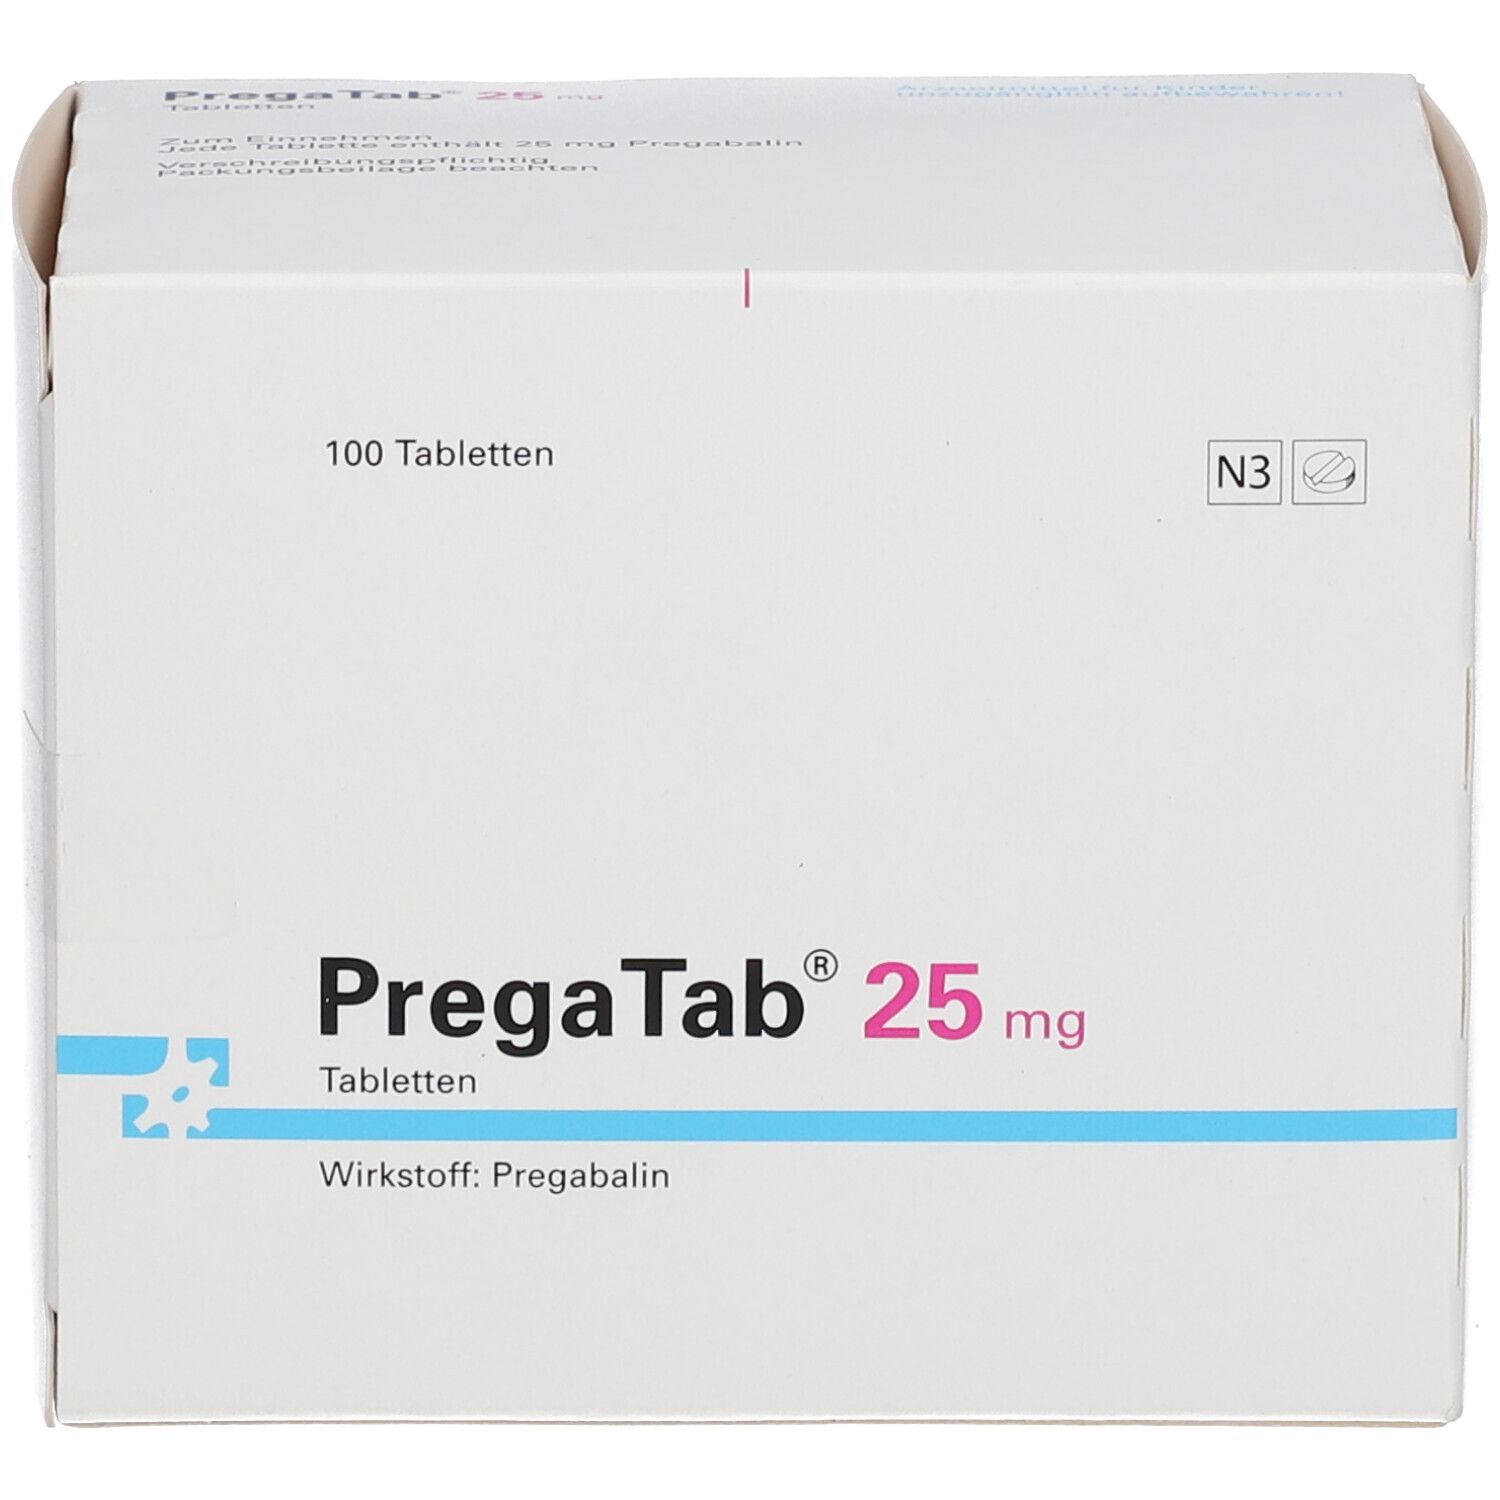 PregaTab® 25 mg